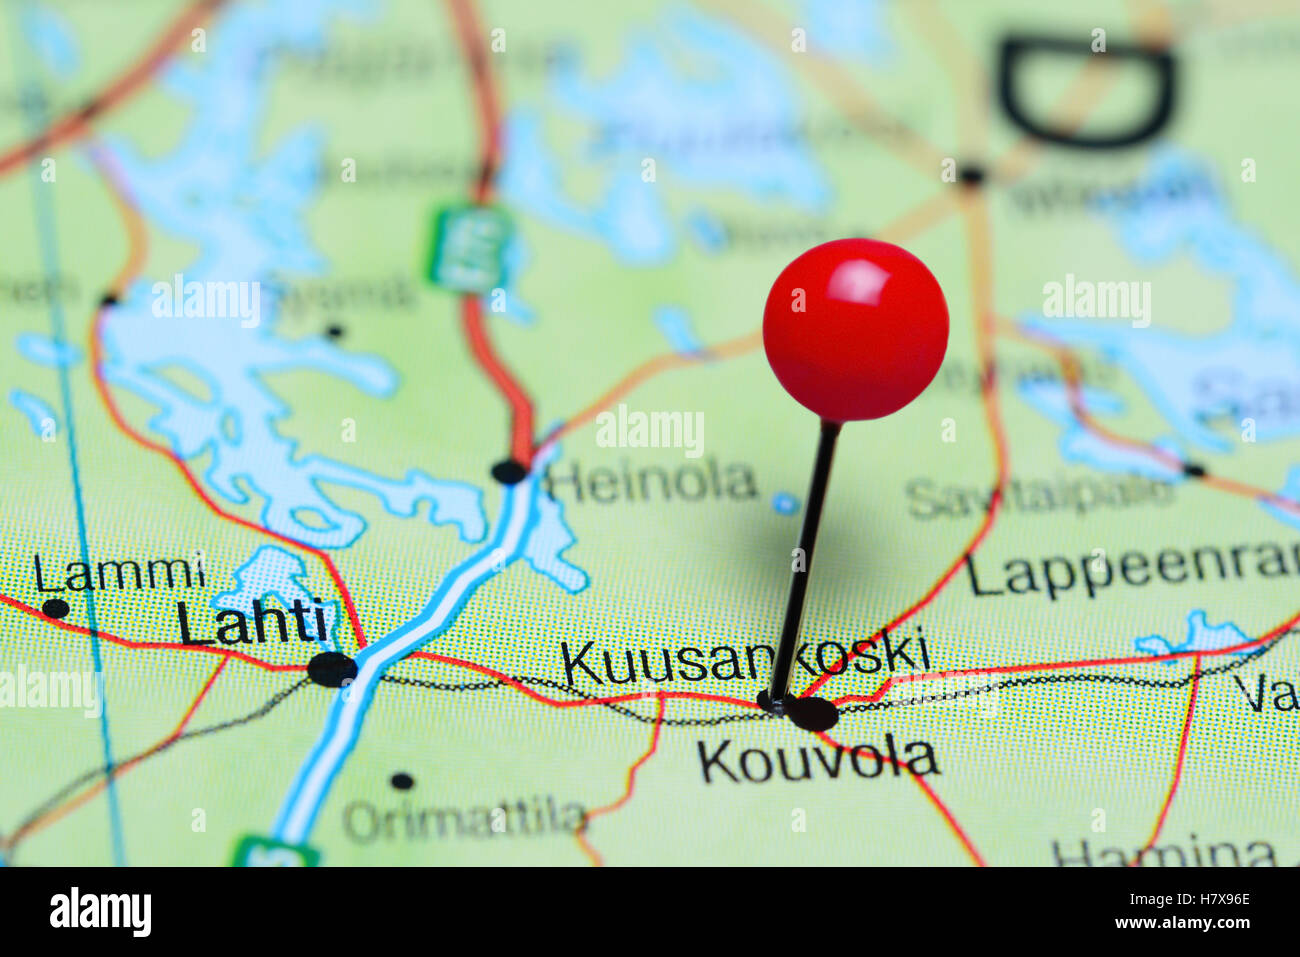 Kuusankoski pinned on a map of Finland Stock Photo